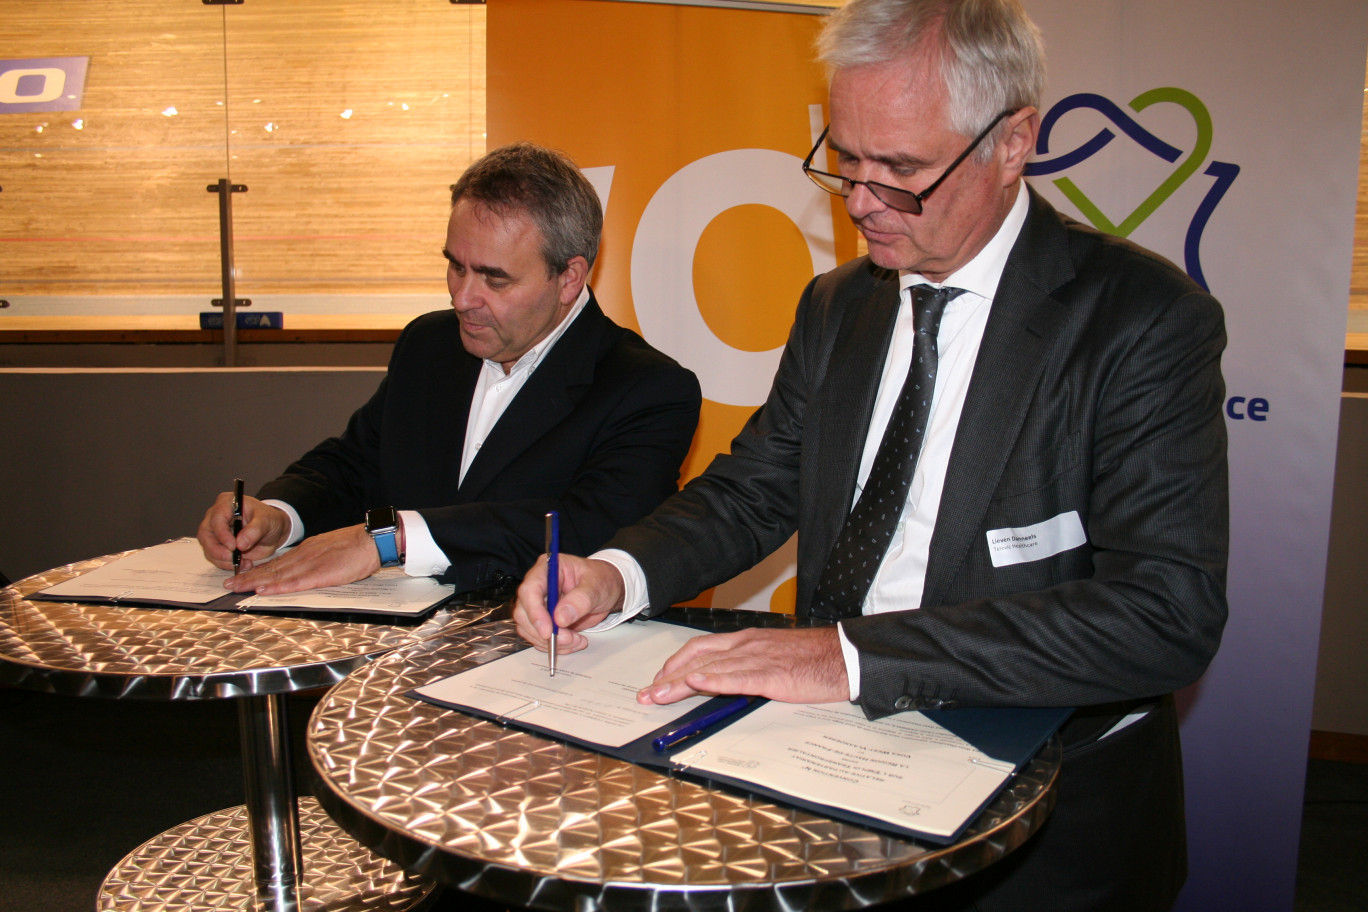 Partenariat emploi entre la Région et le Voka west-vlaanderen